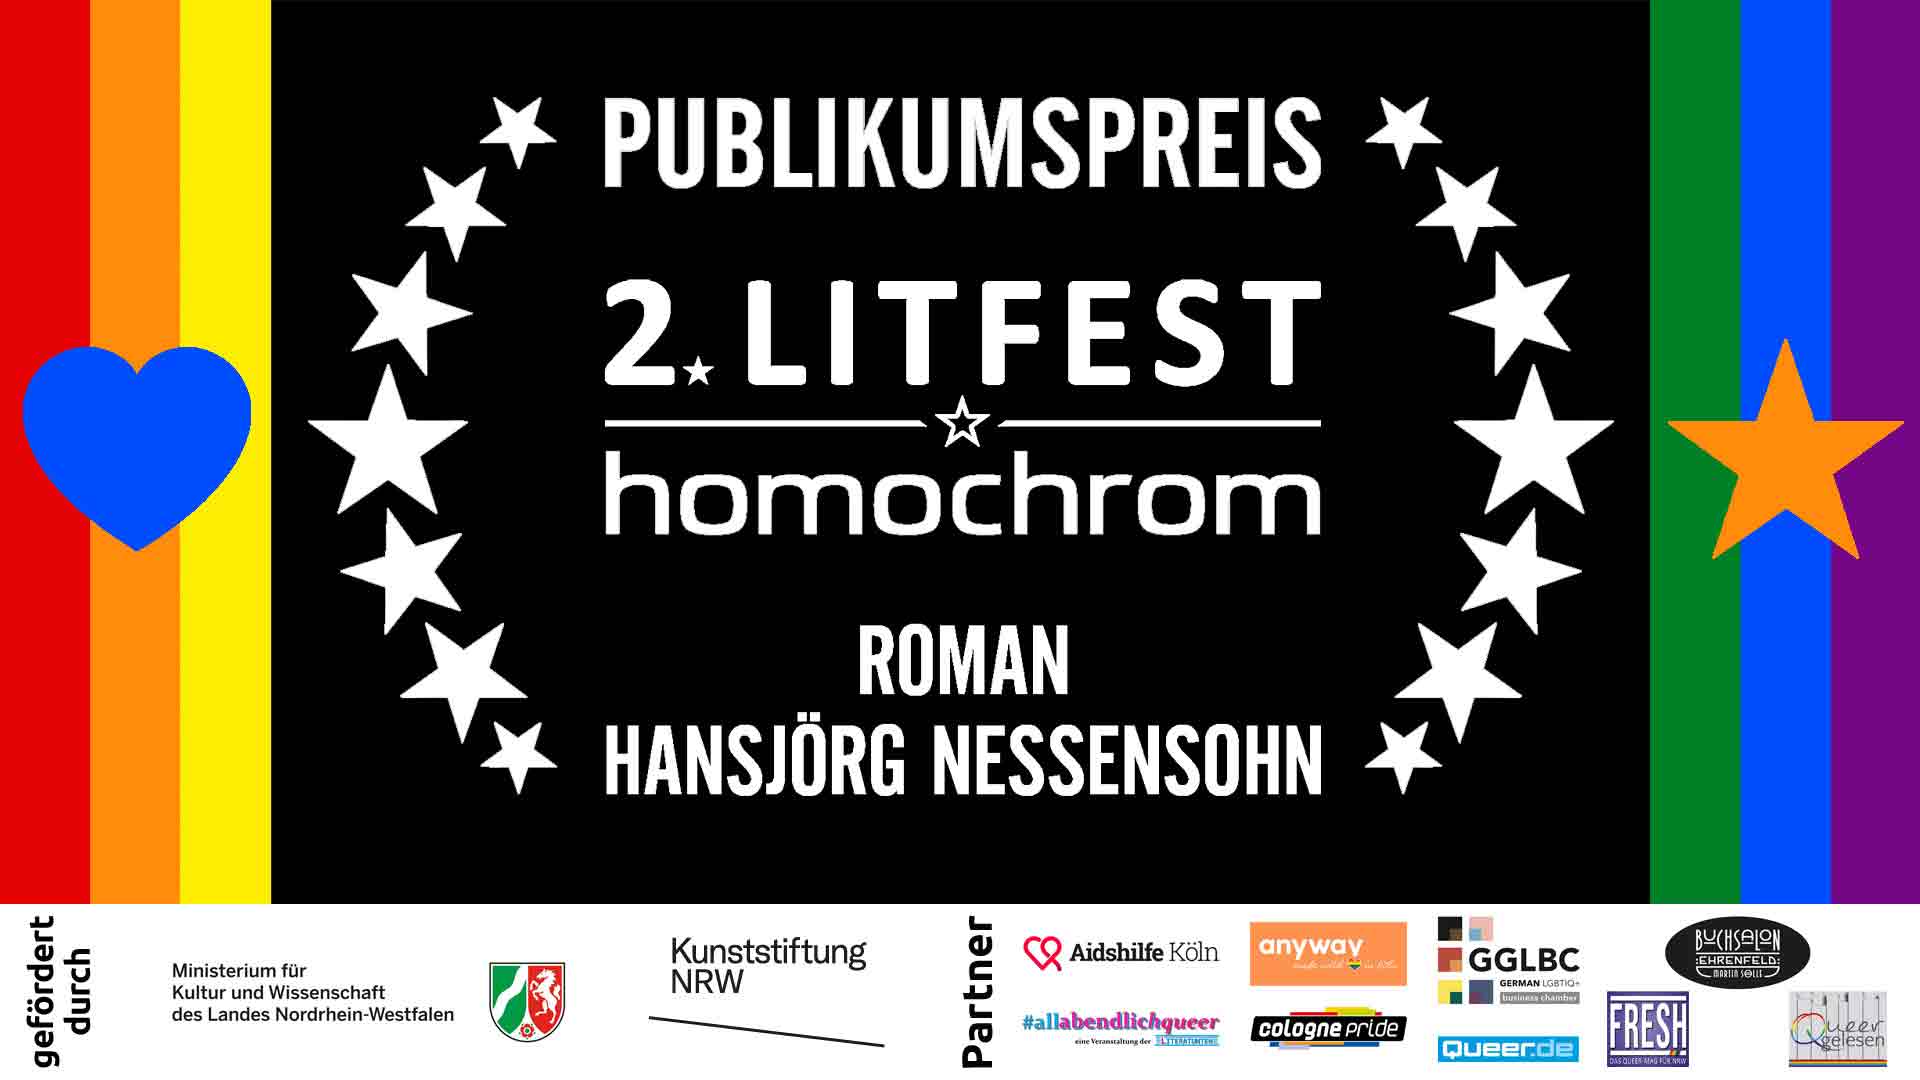  Youtube Video, Hansjörg Nessensohn, 2. Litfest homochrom, Chromie-Gewinner